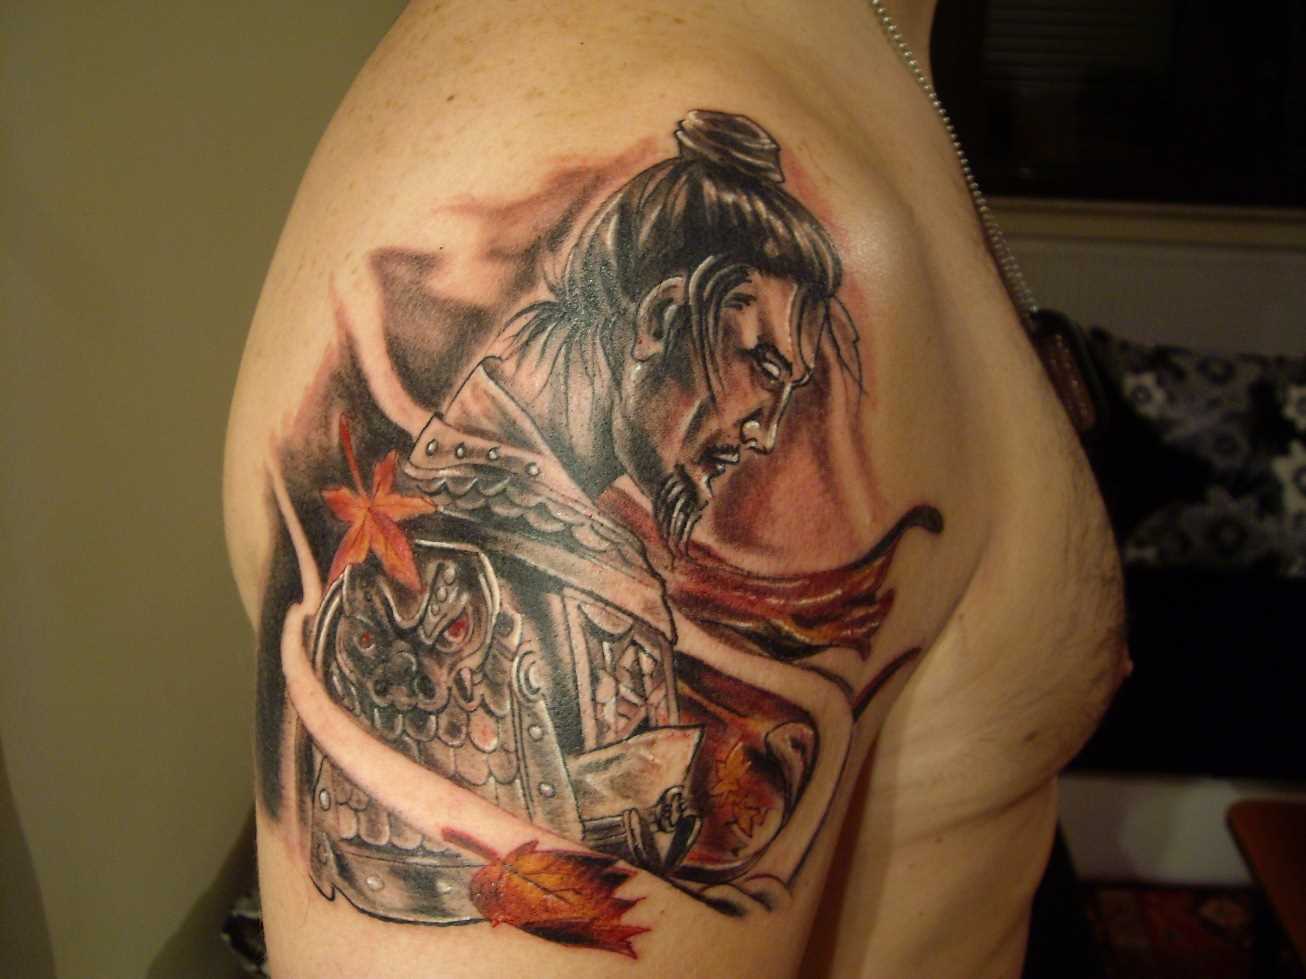 A tatuagem no ombro de um cara - de samurai e folhas